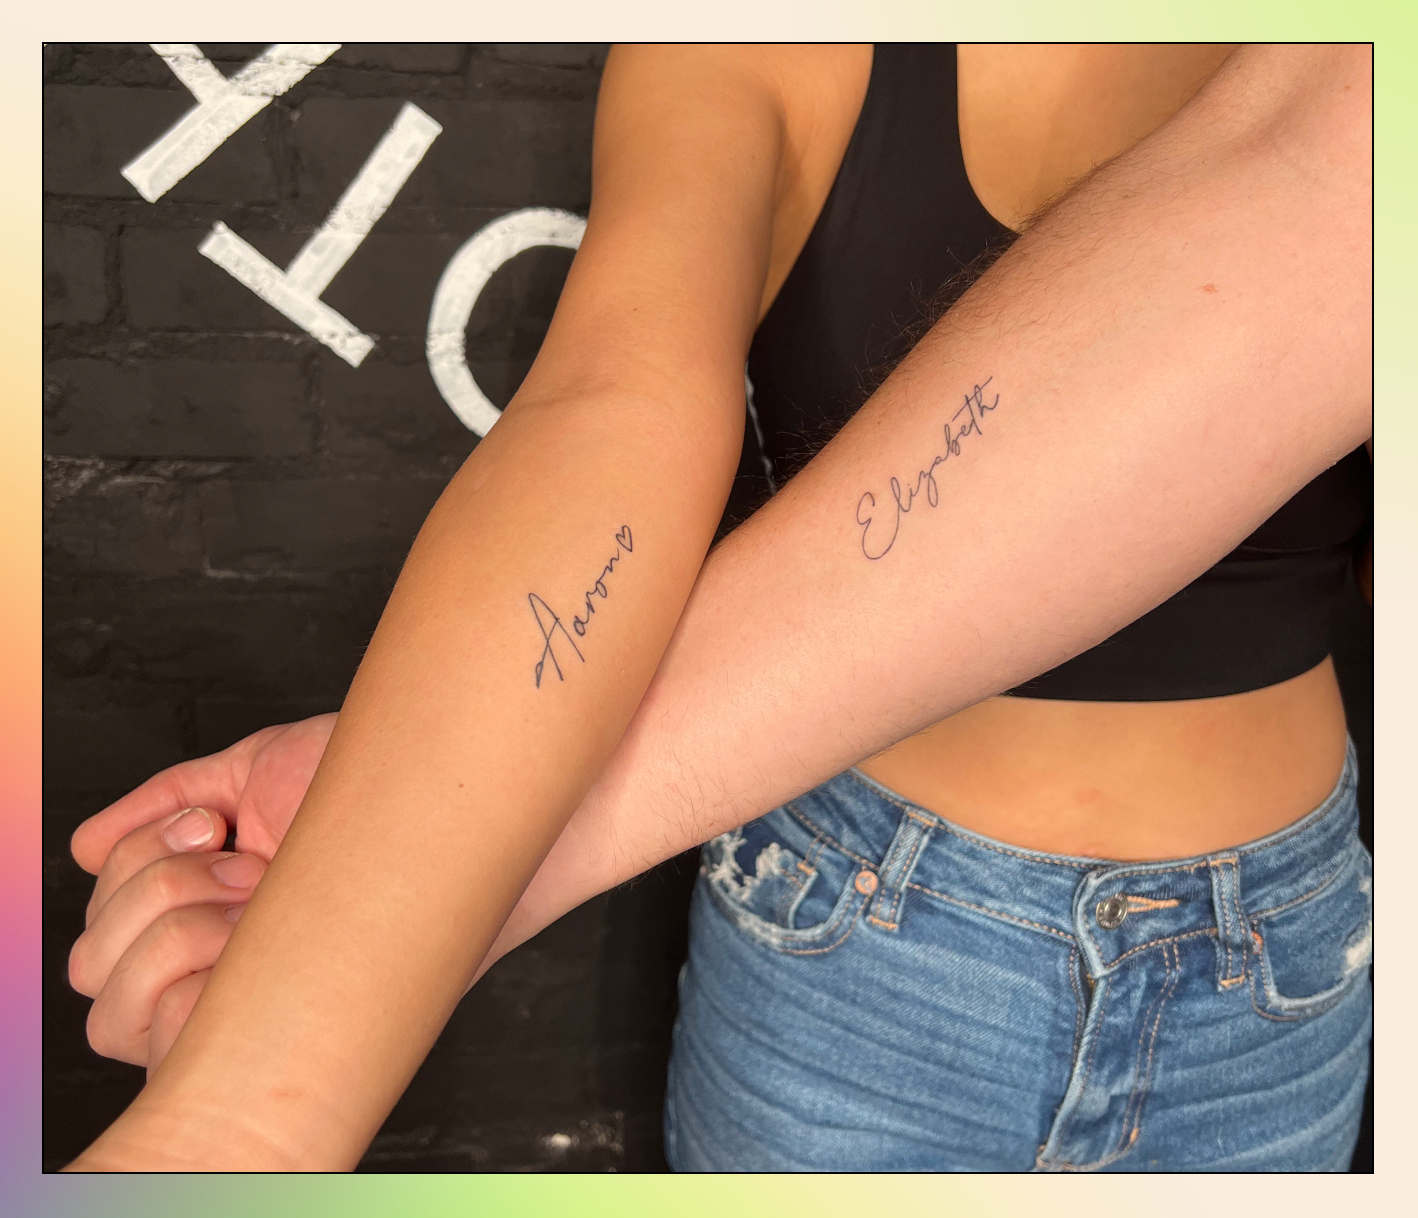 The Toe Cleavage Blog: Tattoo week 2 - Naya Rivera